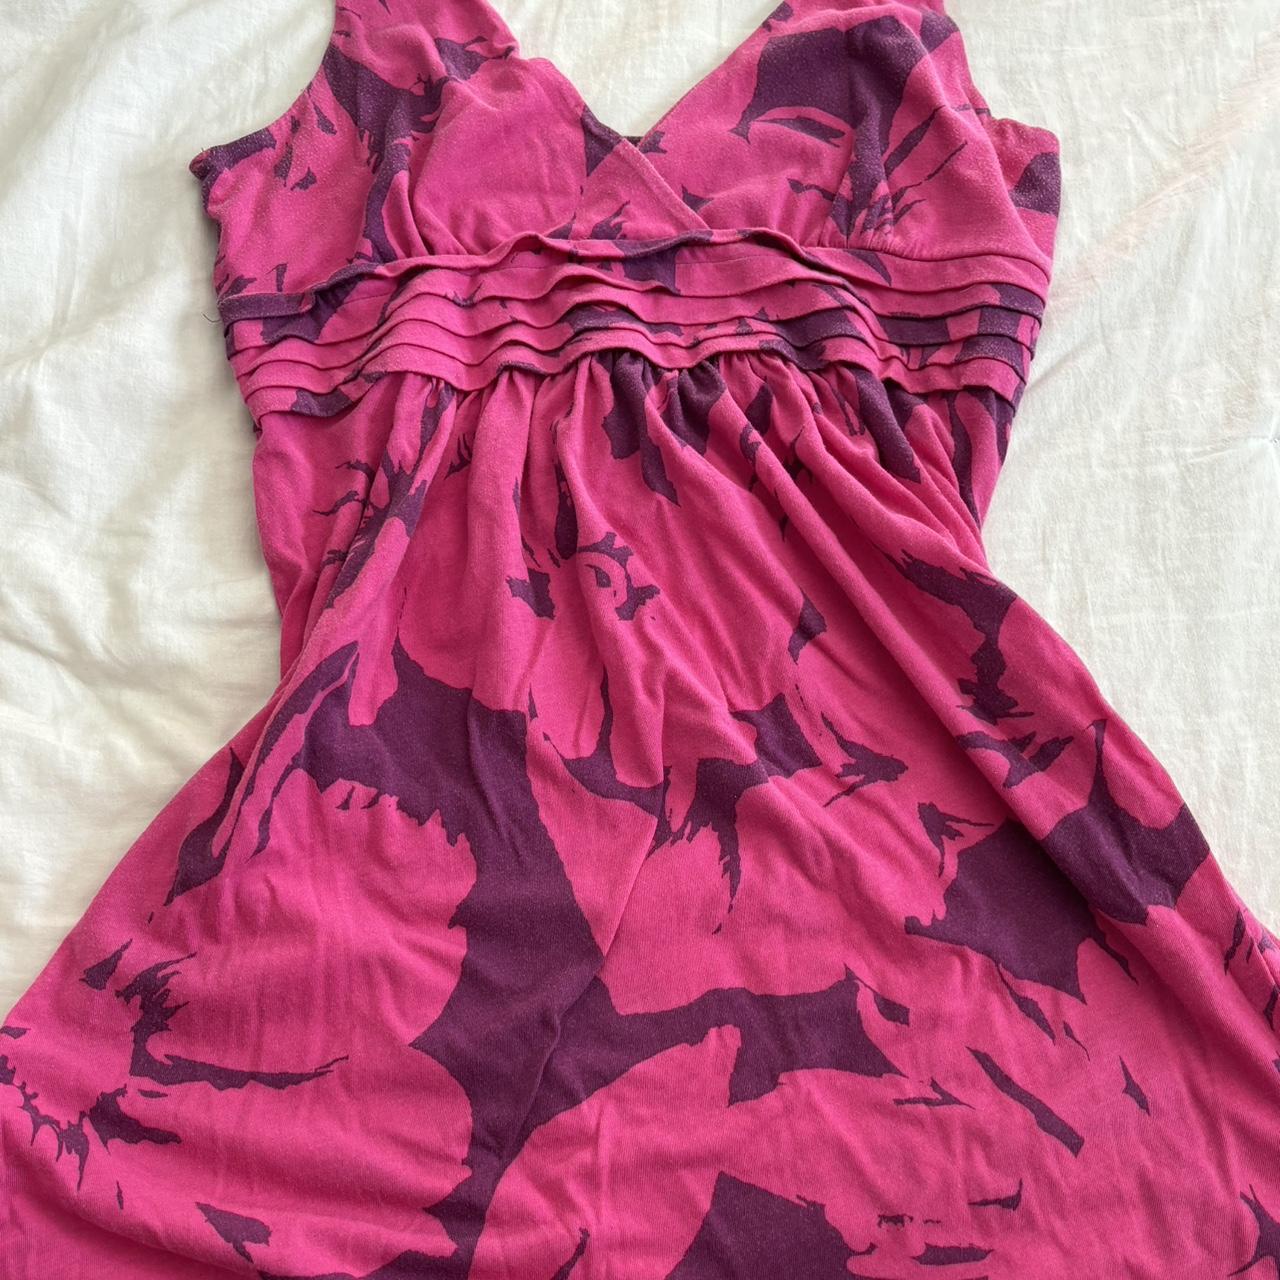 Vintage American Eagle pink dress Size L Gently... - Depop